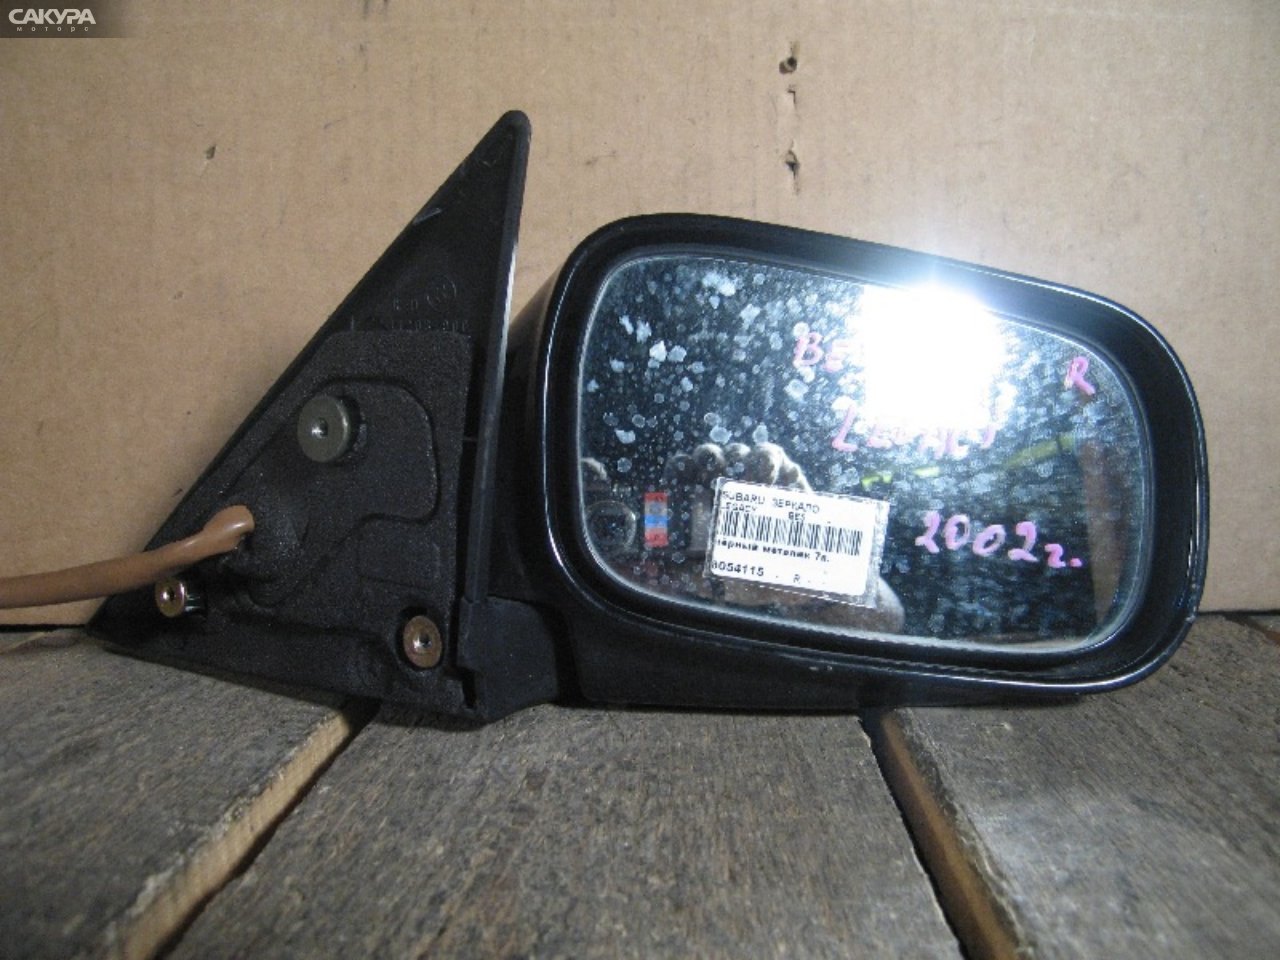 Зеркало боковое правое Subaru Legacy BE5: купить в Сакура Абакан.